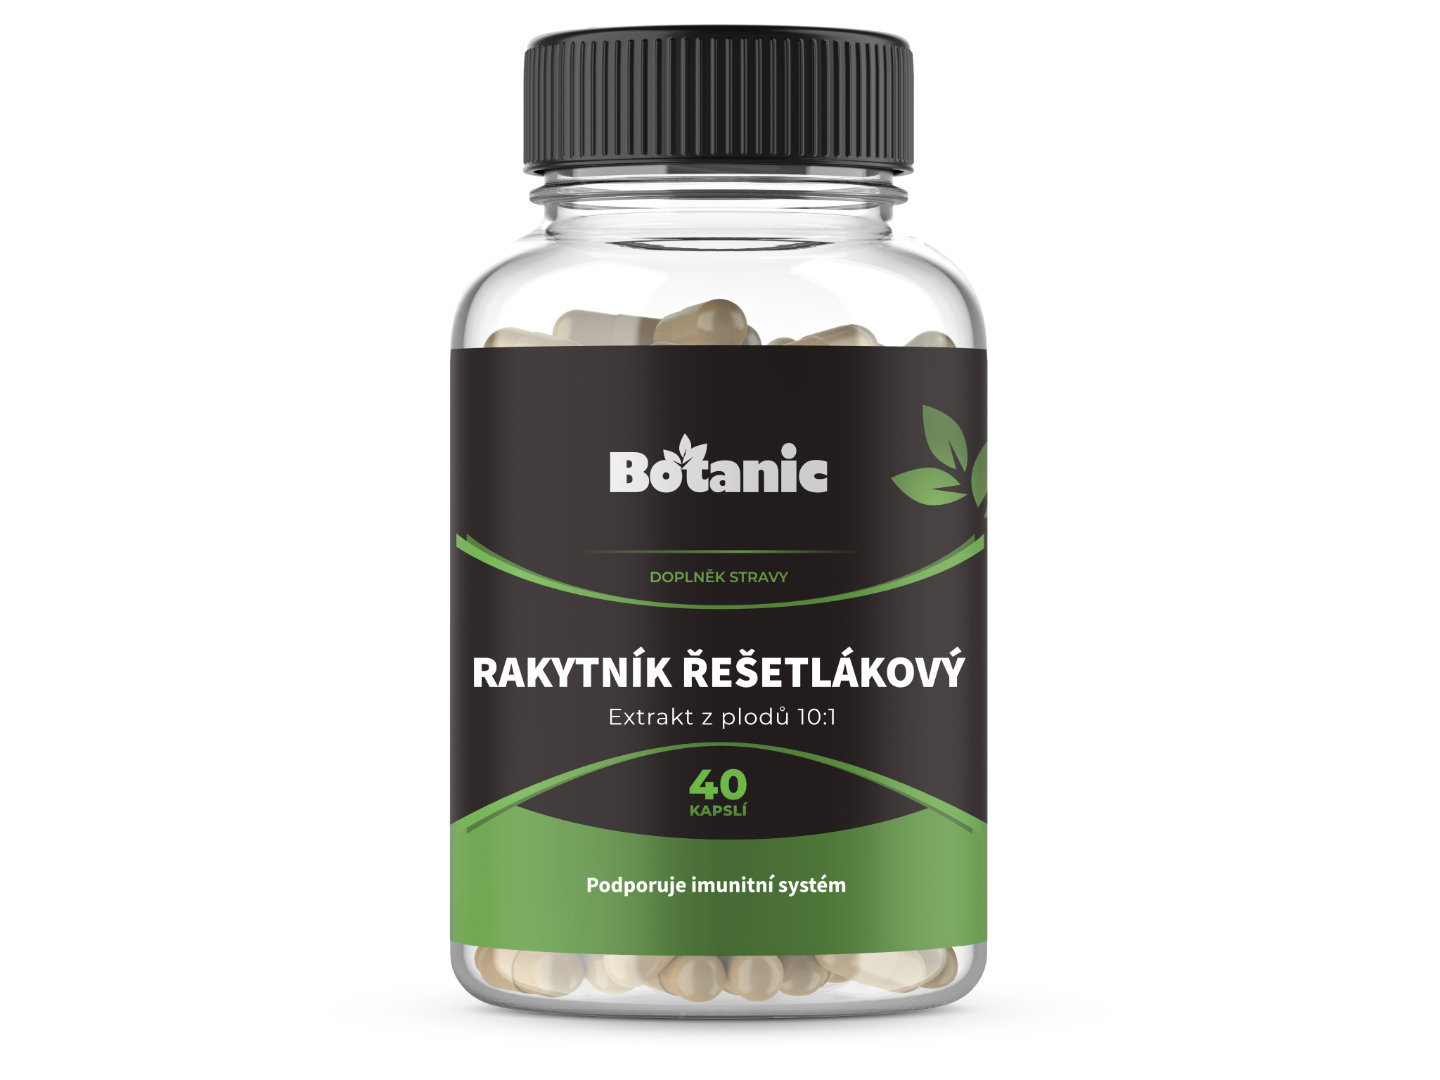 Botanic Rakytník řešetlákový - Extrakt z plodů 10:1 40kap.